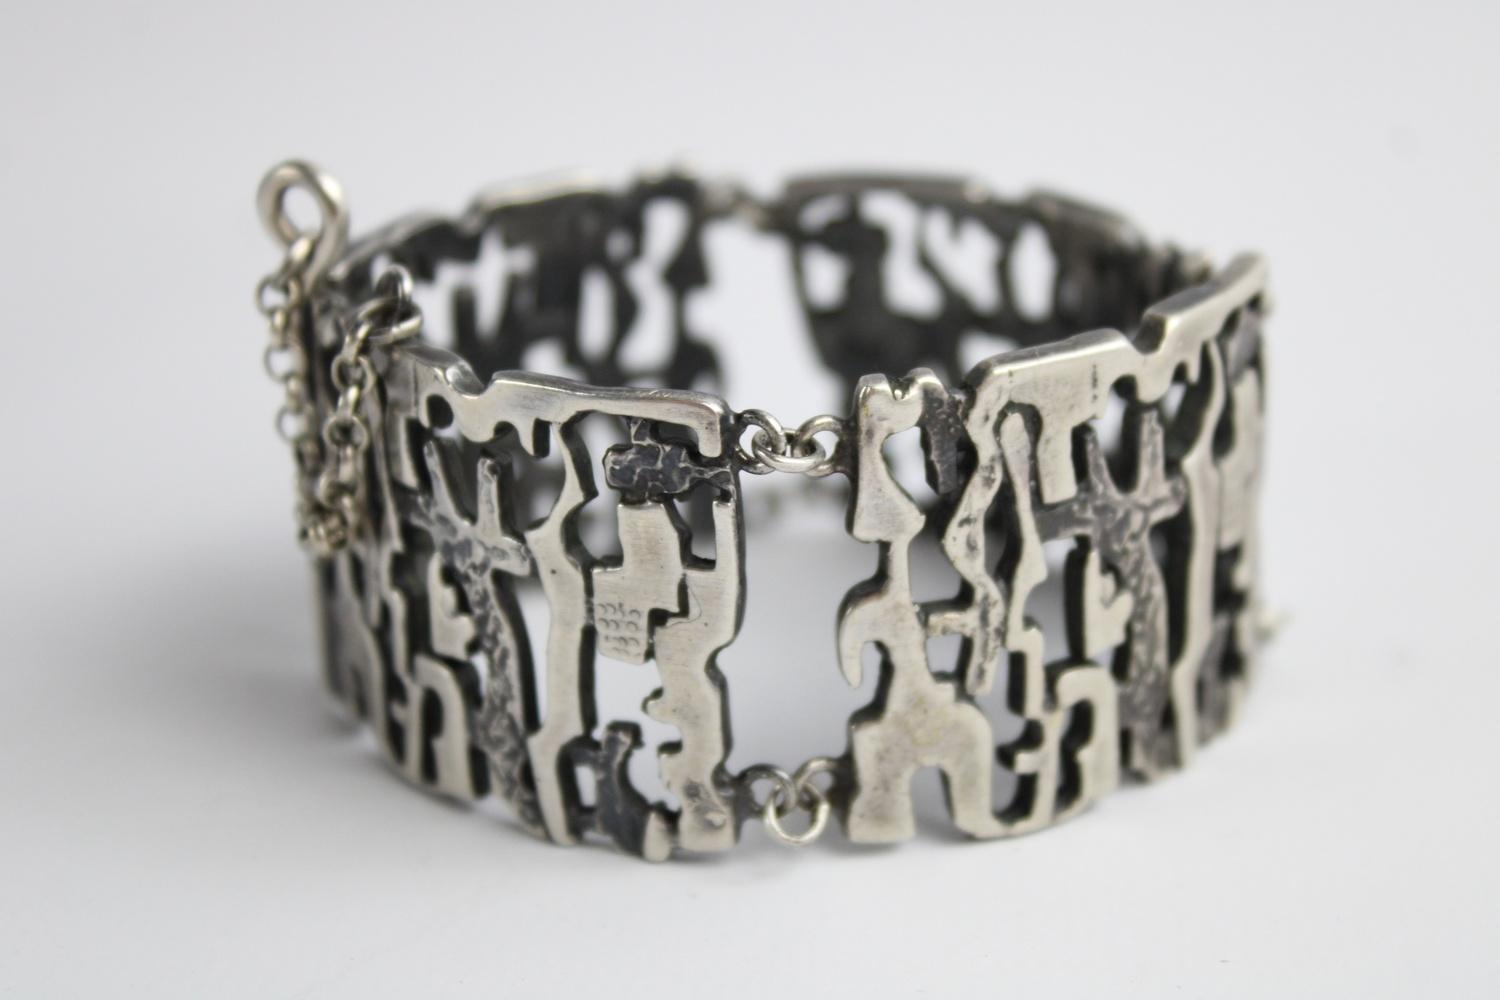 Vintage .835 silver textured modernist pendant necklace & bracelet set - Image 2 of 4